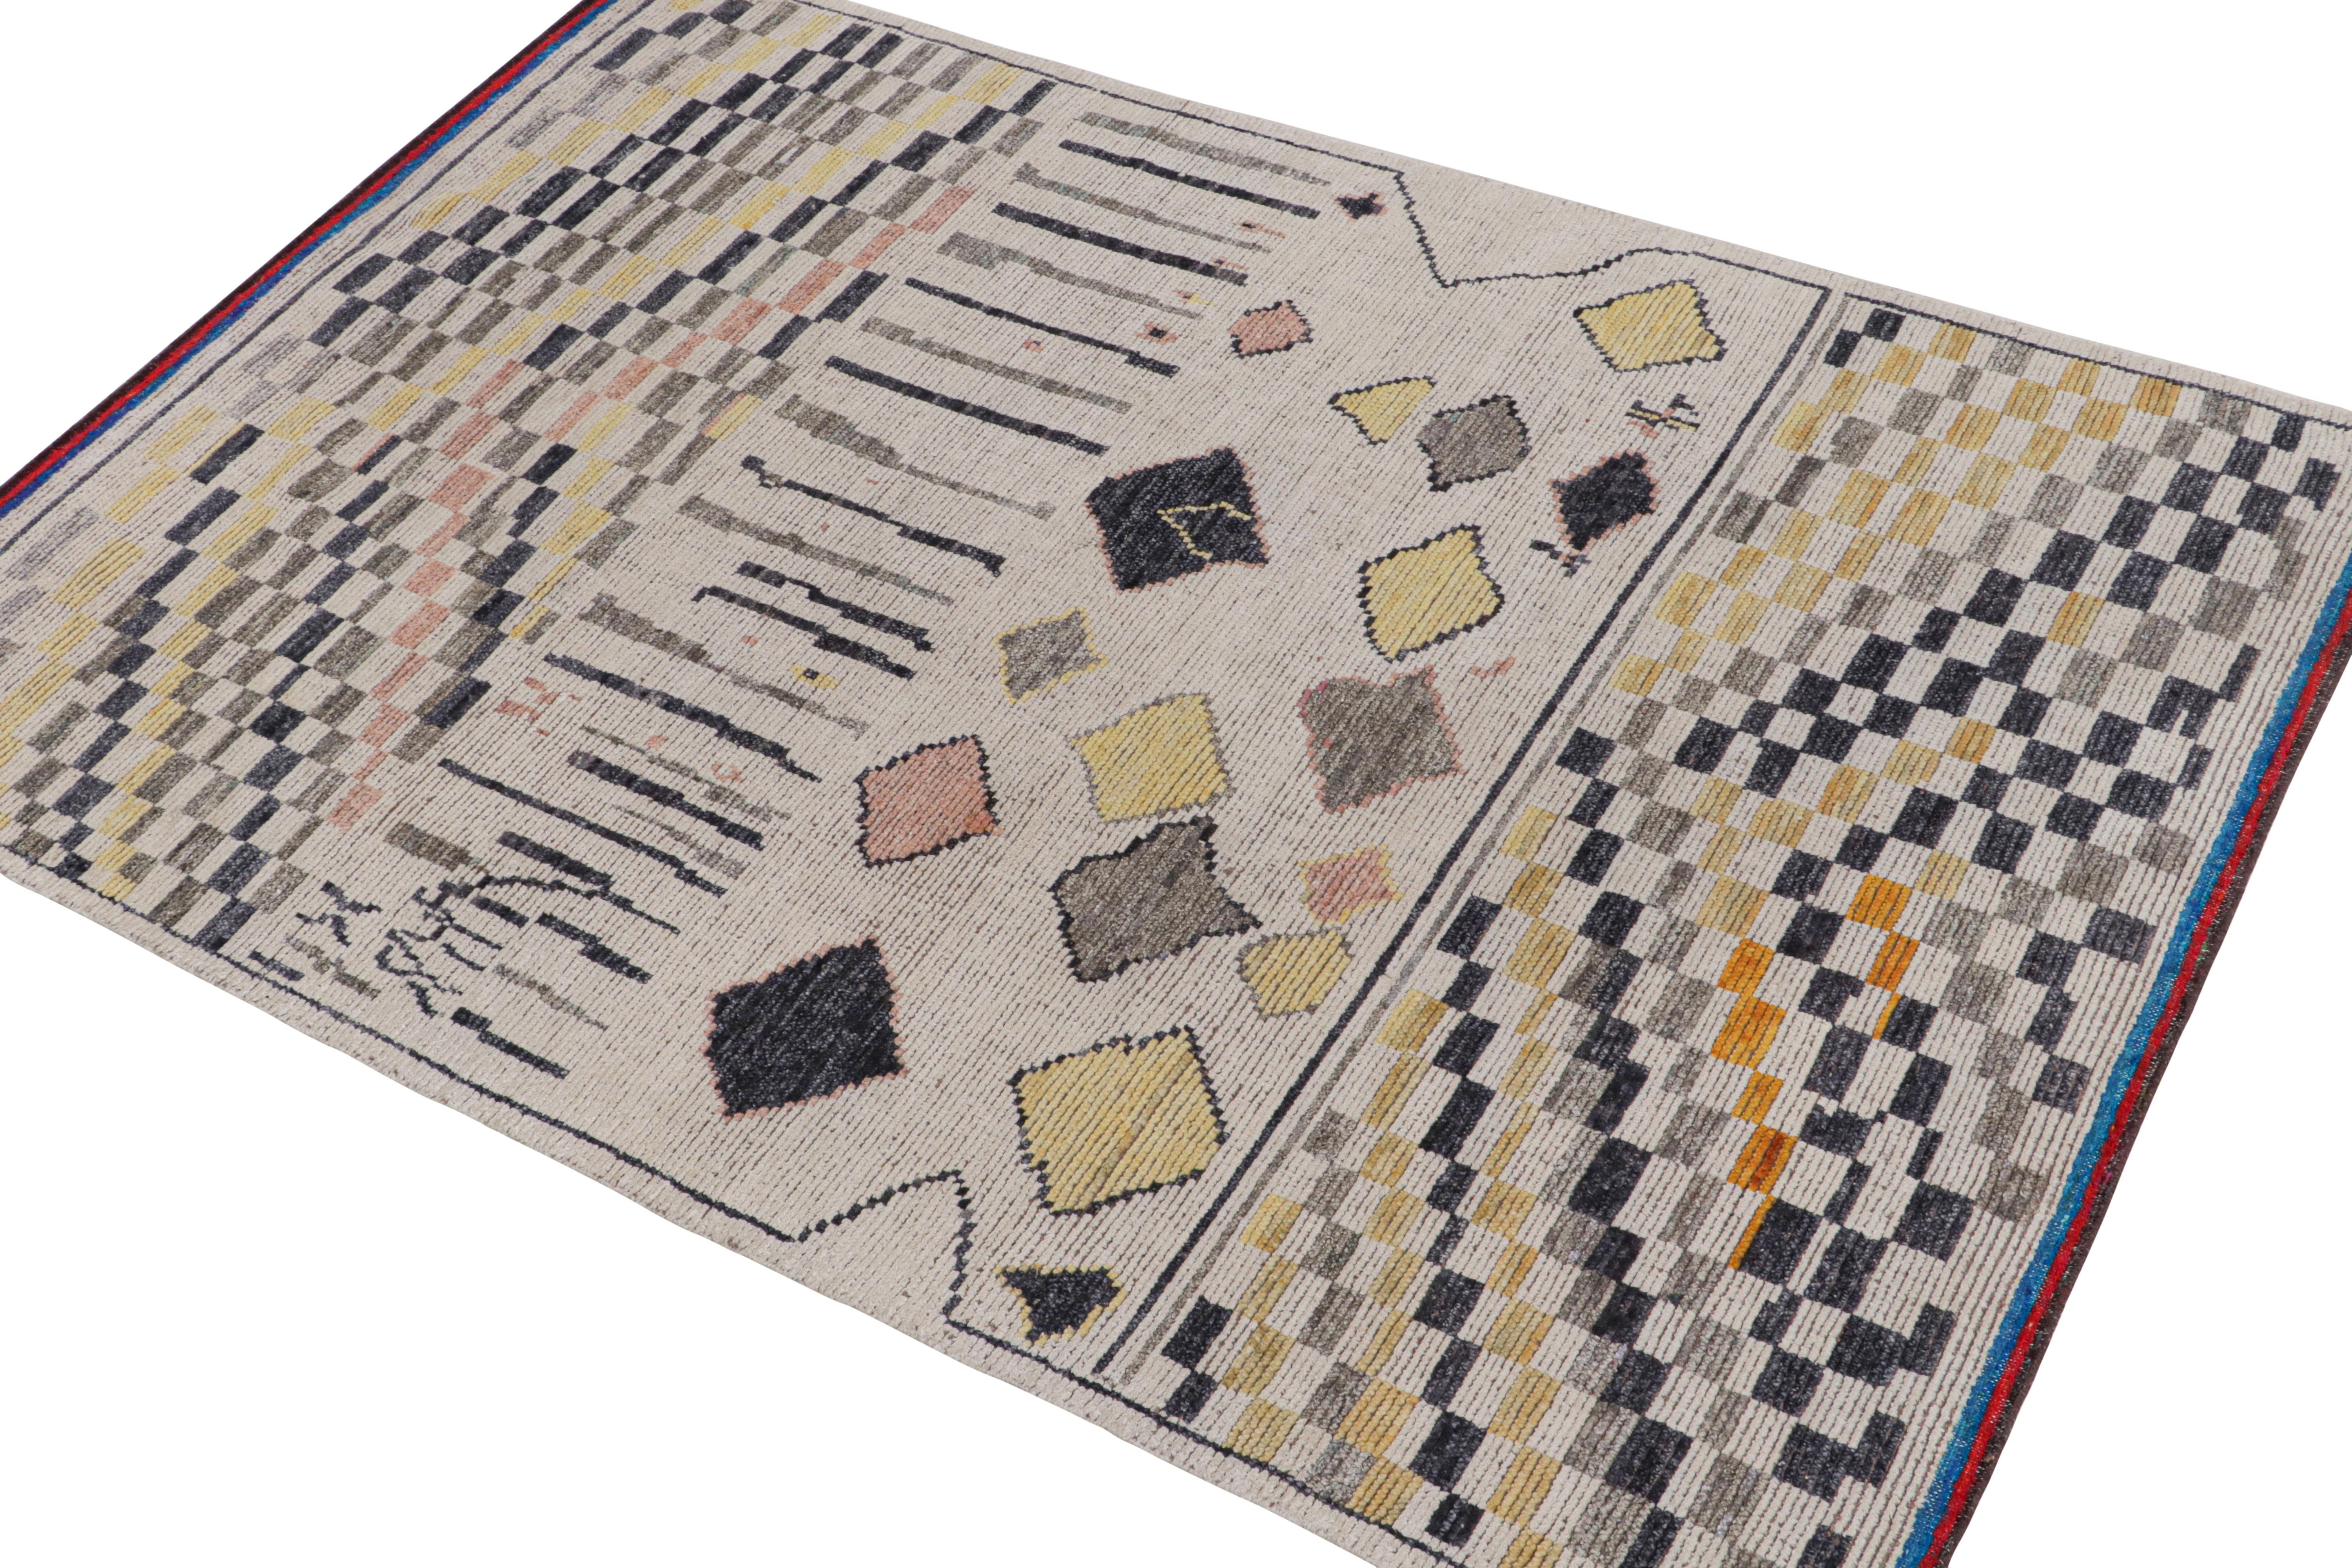 Ce tapis contemporain 6x9 est le dernier né de la nouvelle collection marocaine de Rug & Kilim, une version audacieuse de ce style emblématique. Noué à la main dans un mélange de laine, de soie et de coton.
Plus loin dans la conception :
Le design